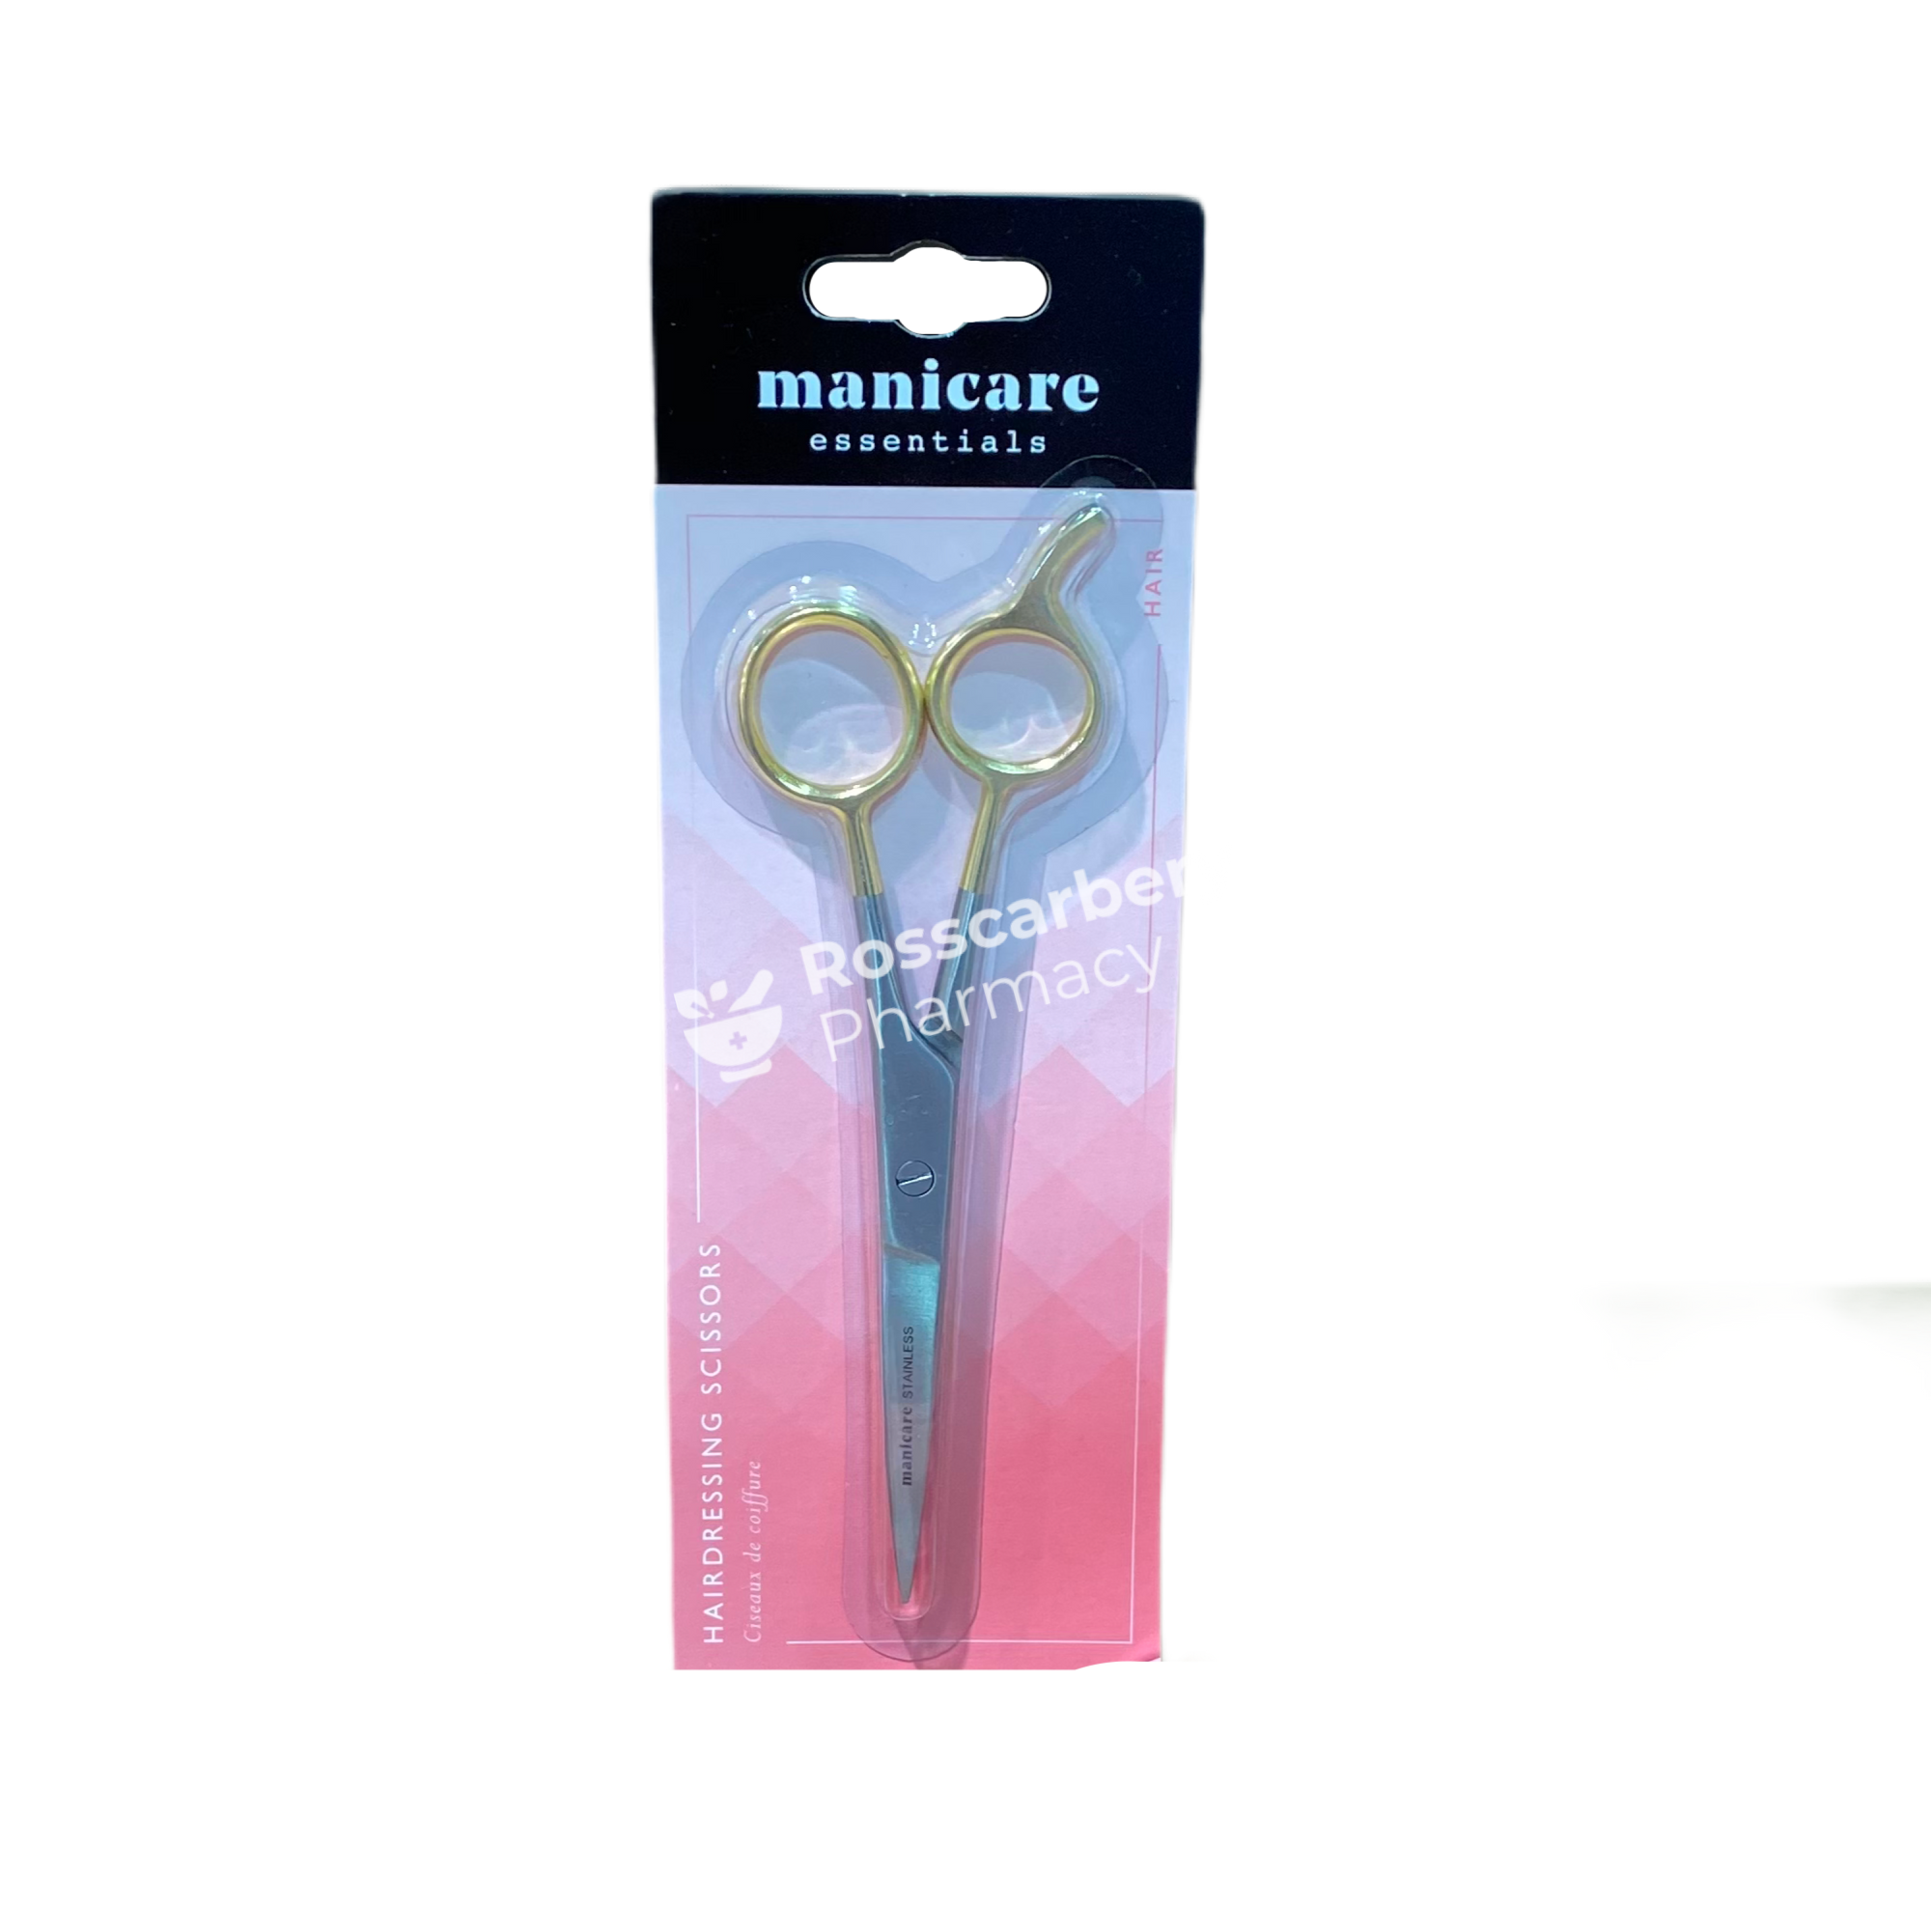 Manicare Essentials Hairdressing Scissors